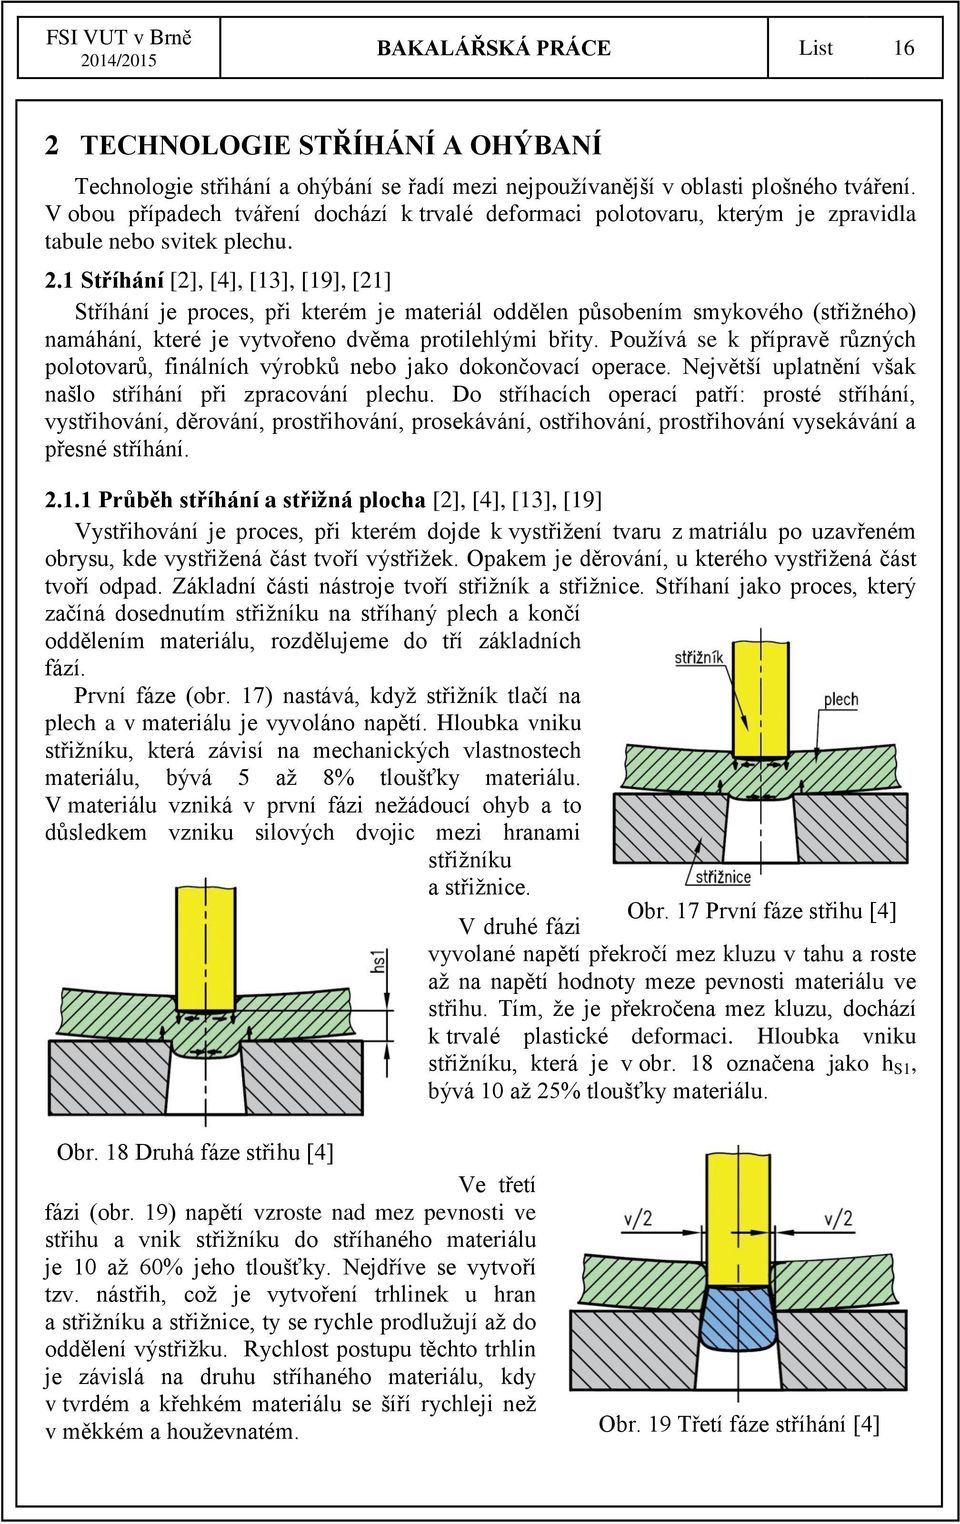 1 Stříhání [2], [4], [13], [19], [21] Stříhání je proces, při kterém je materiál oddělen působením smykového (střižného) namáhání, které je vytvořeno dvěma protilehlými břity.